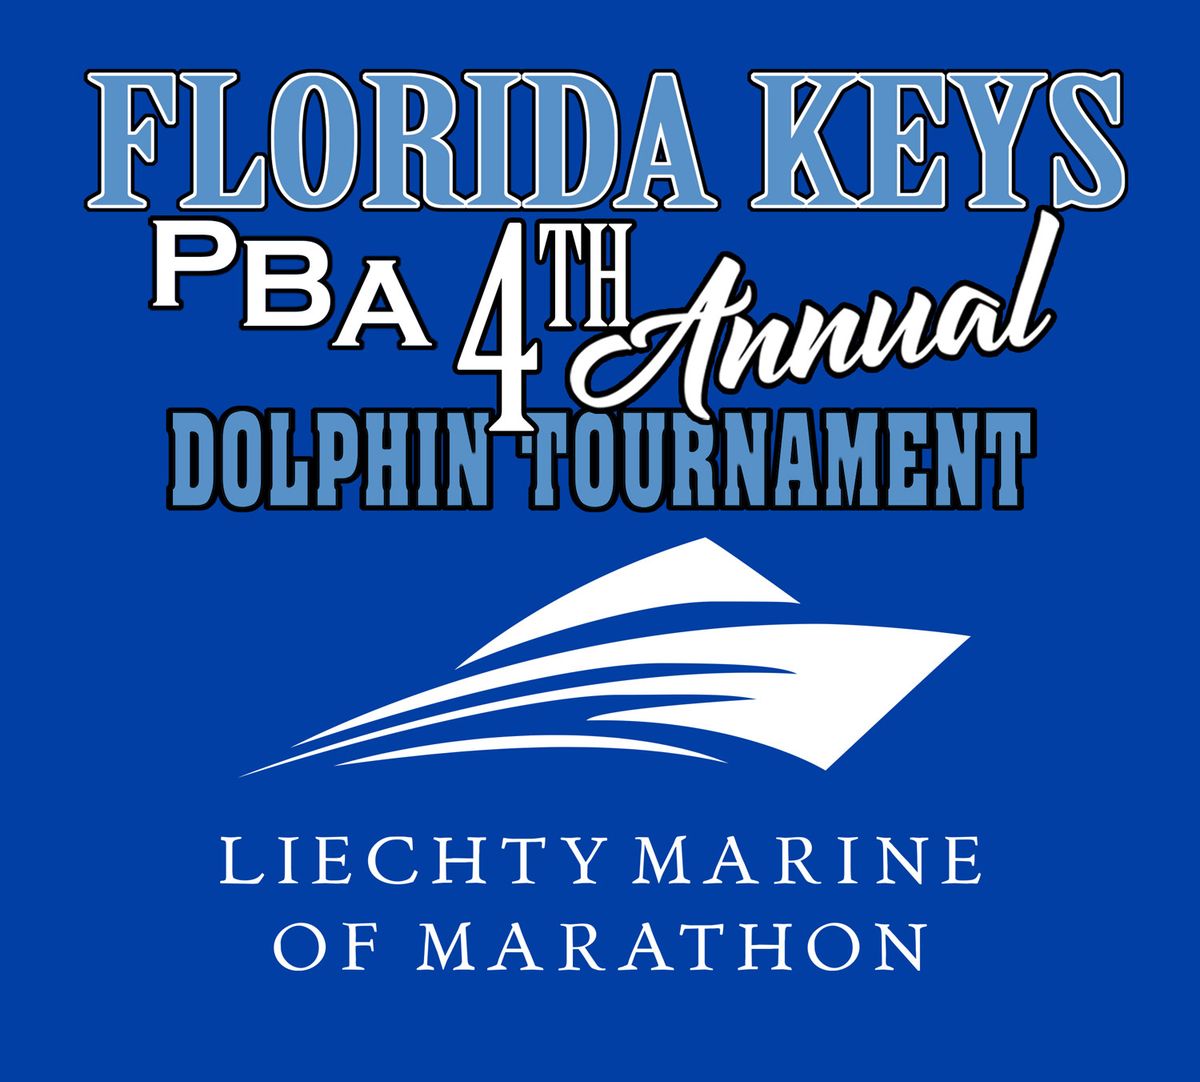 Florida Keys PBA Dolphin Tournament